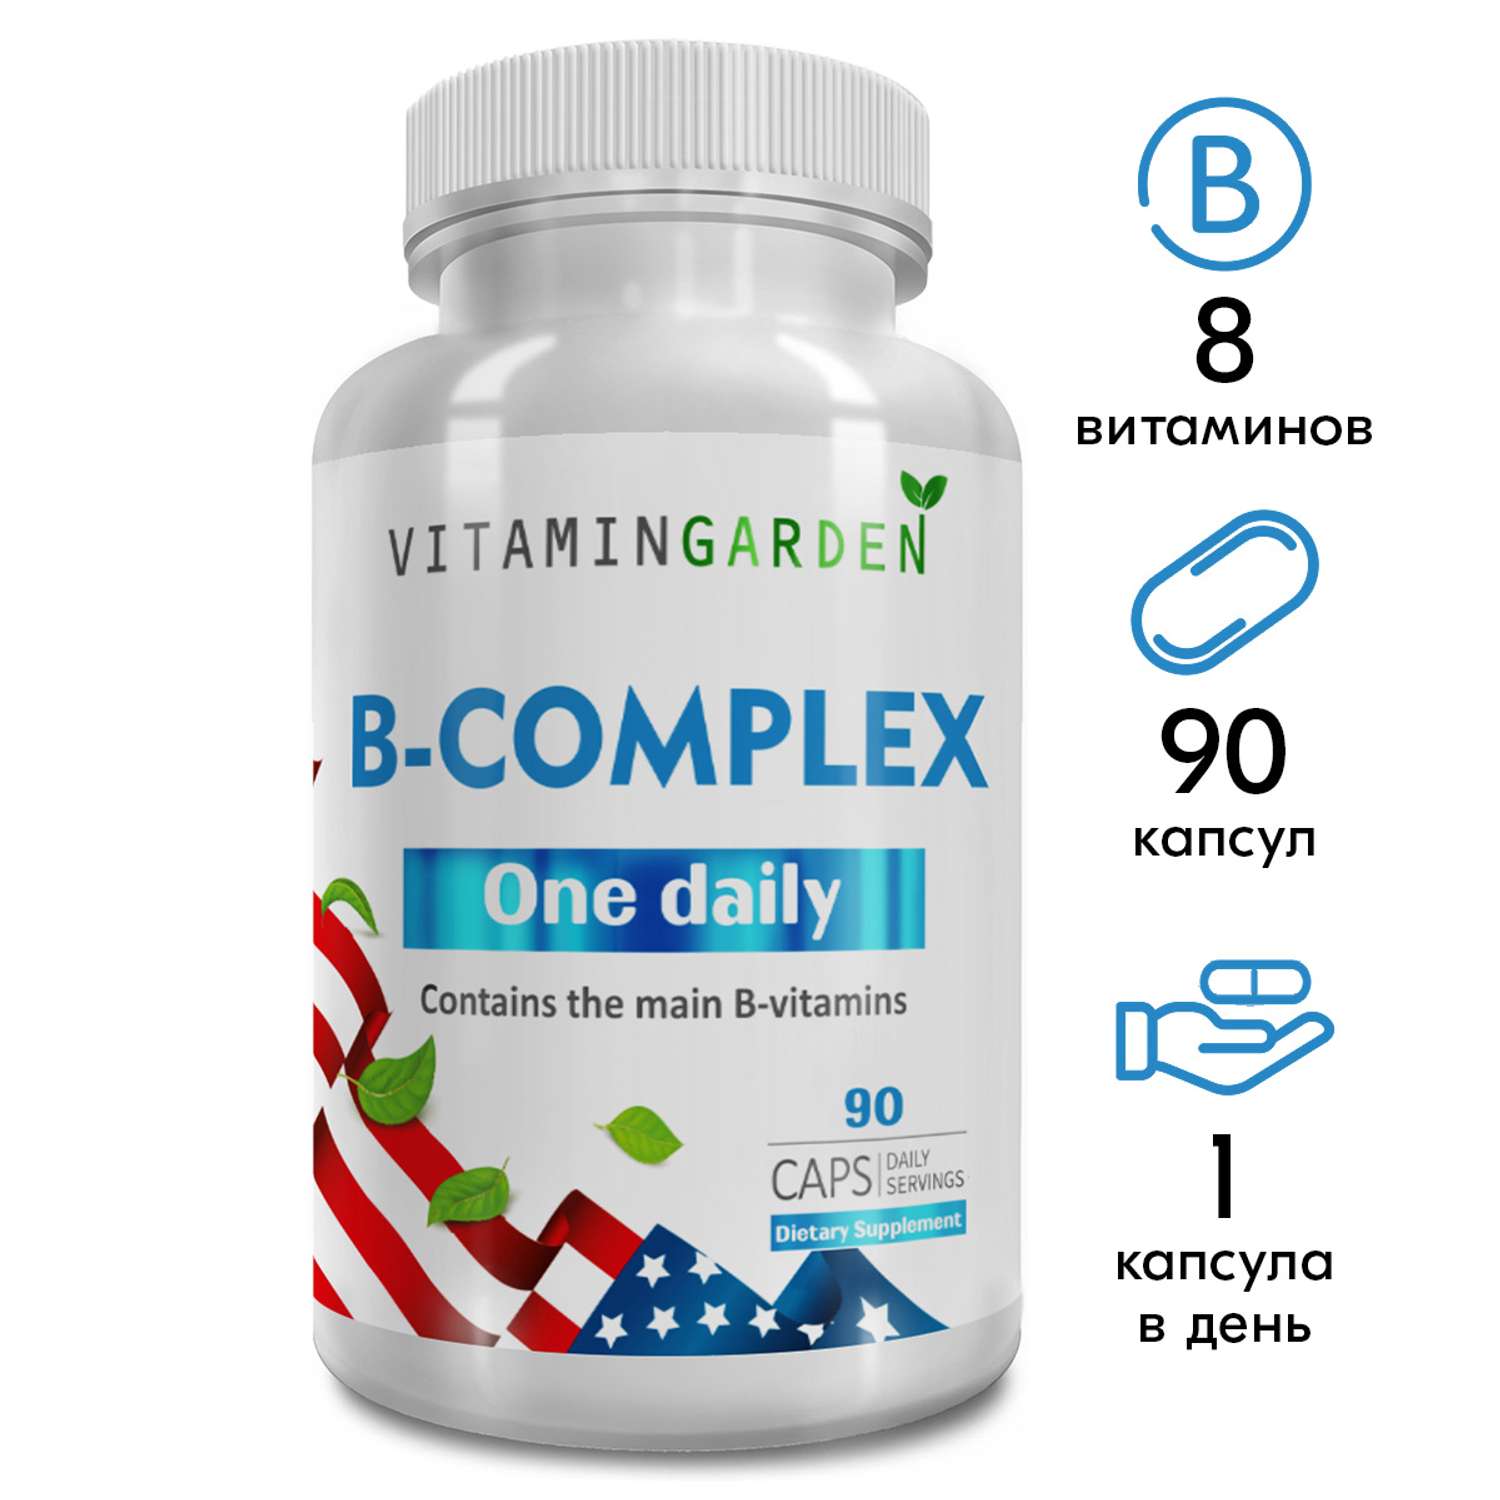 Комплекс витаминов группы Б VITAMIN GARDEN для женщин и мужчин B complex - 90 капсул - фото 1